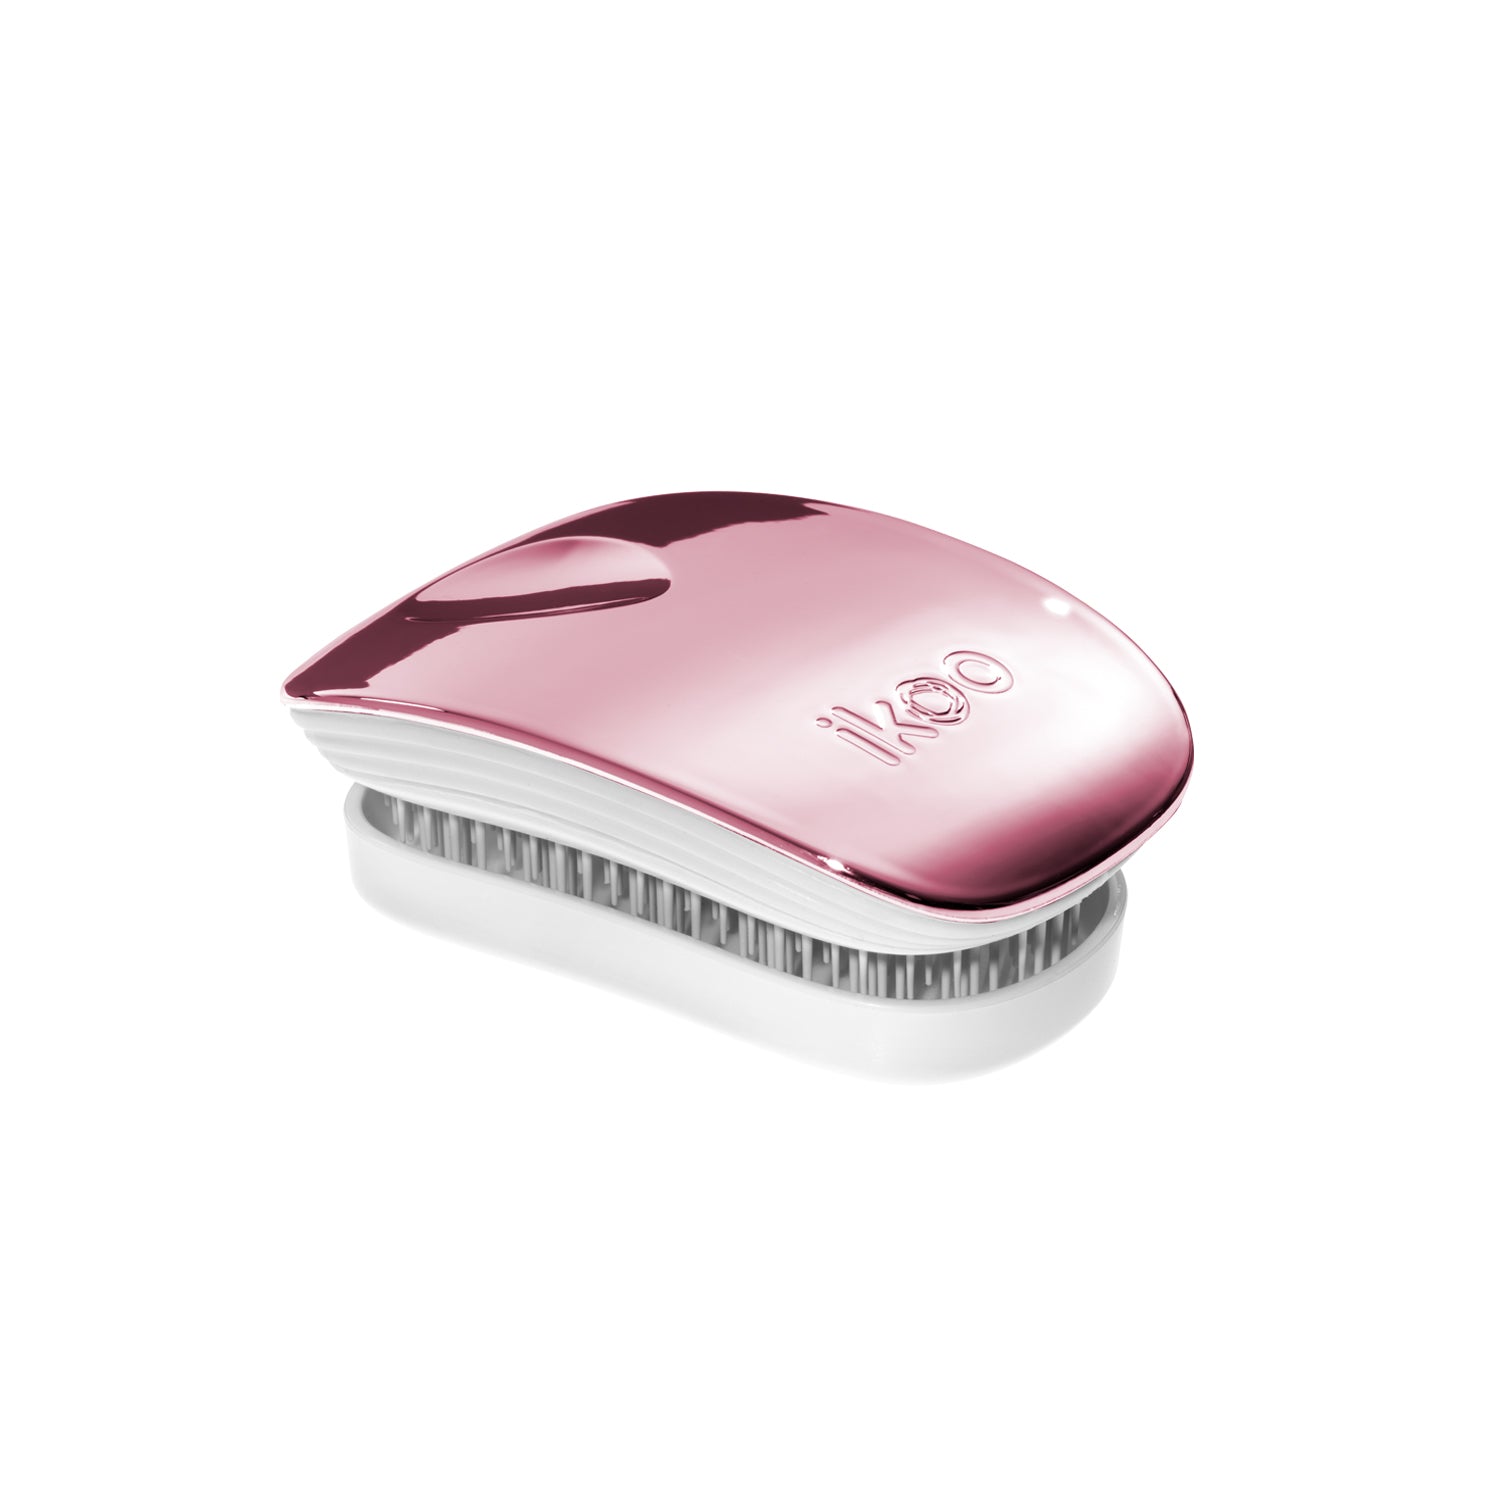 Ikoo Pocket - White - Rose Metallic Hair Brush